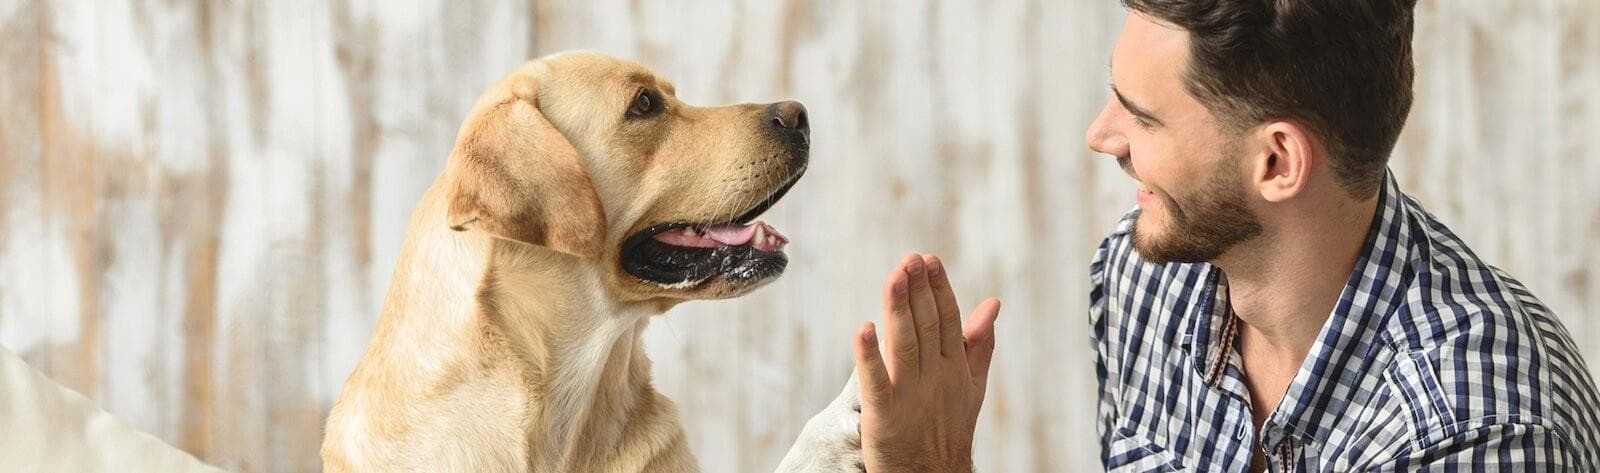 A dog giving a man a high five.